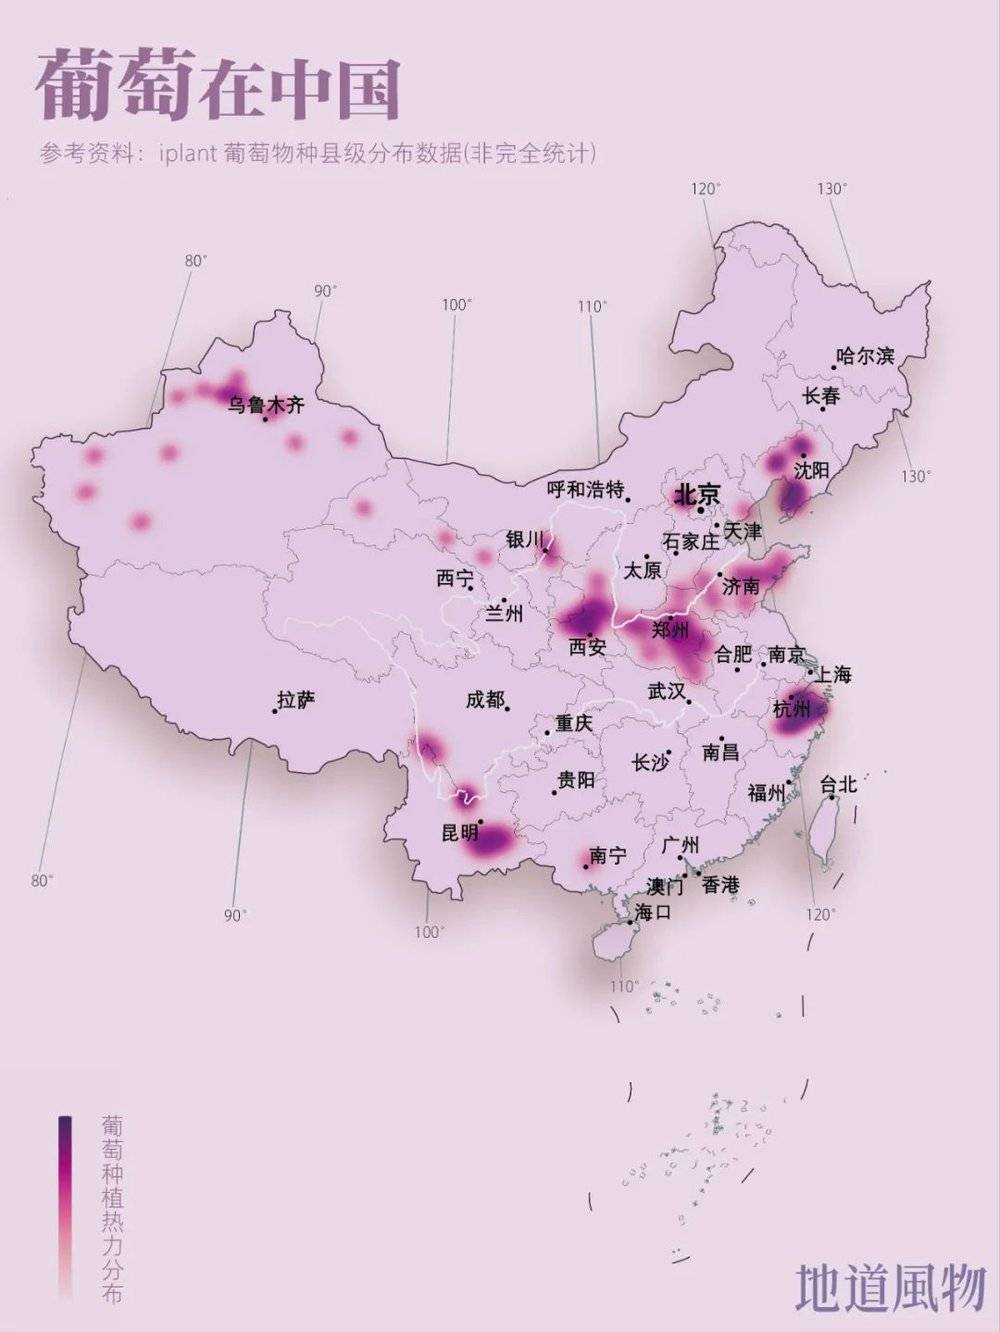 ▲ 中国葡萄种植热力分布图。（以上地图中的葡萄种植分布只代表大概的分布范围，不代表精准的种植分布和产量。）制图/monk<br>